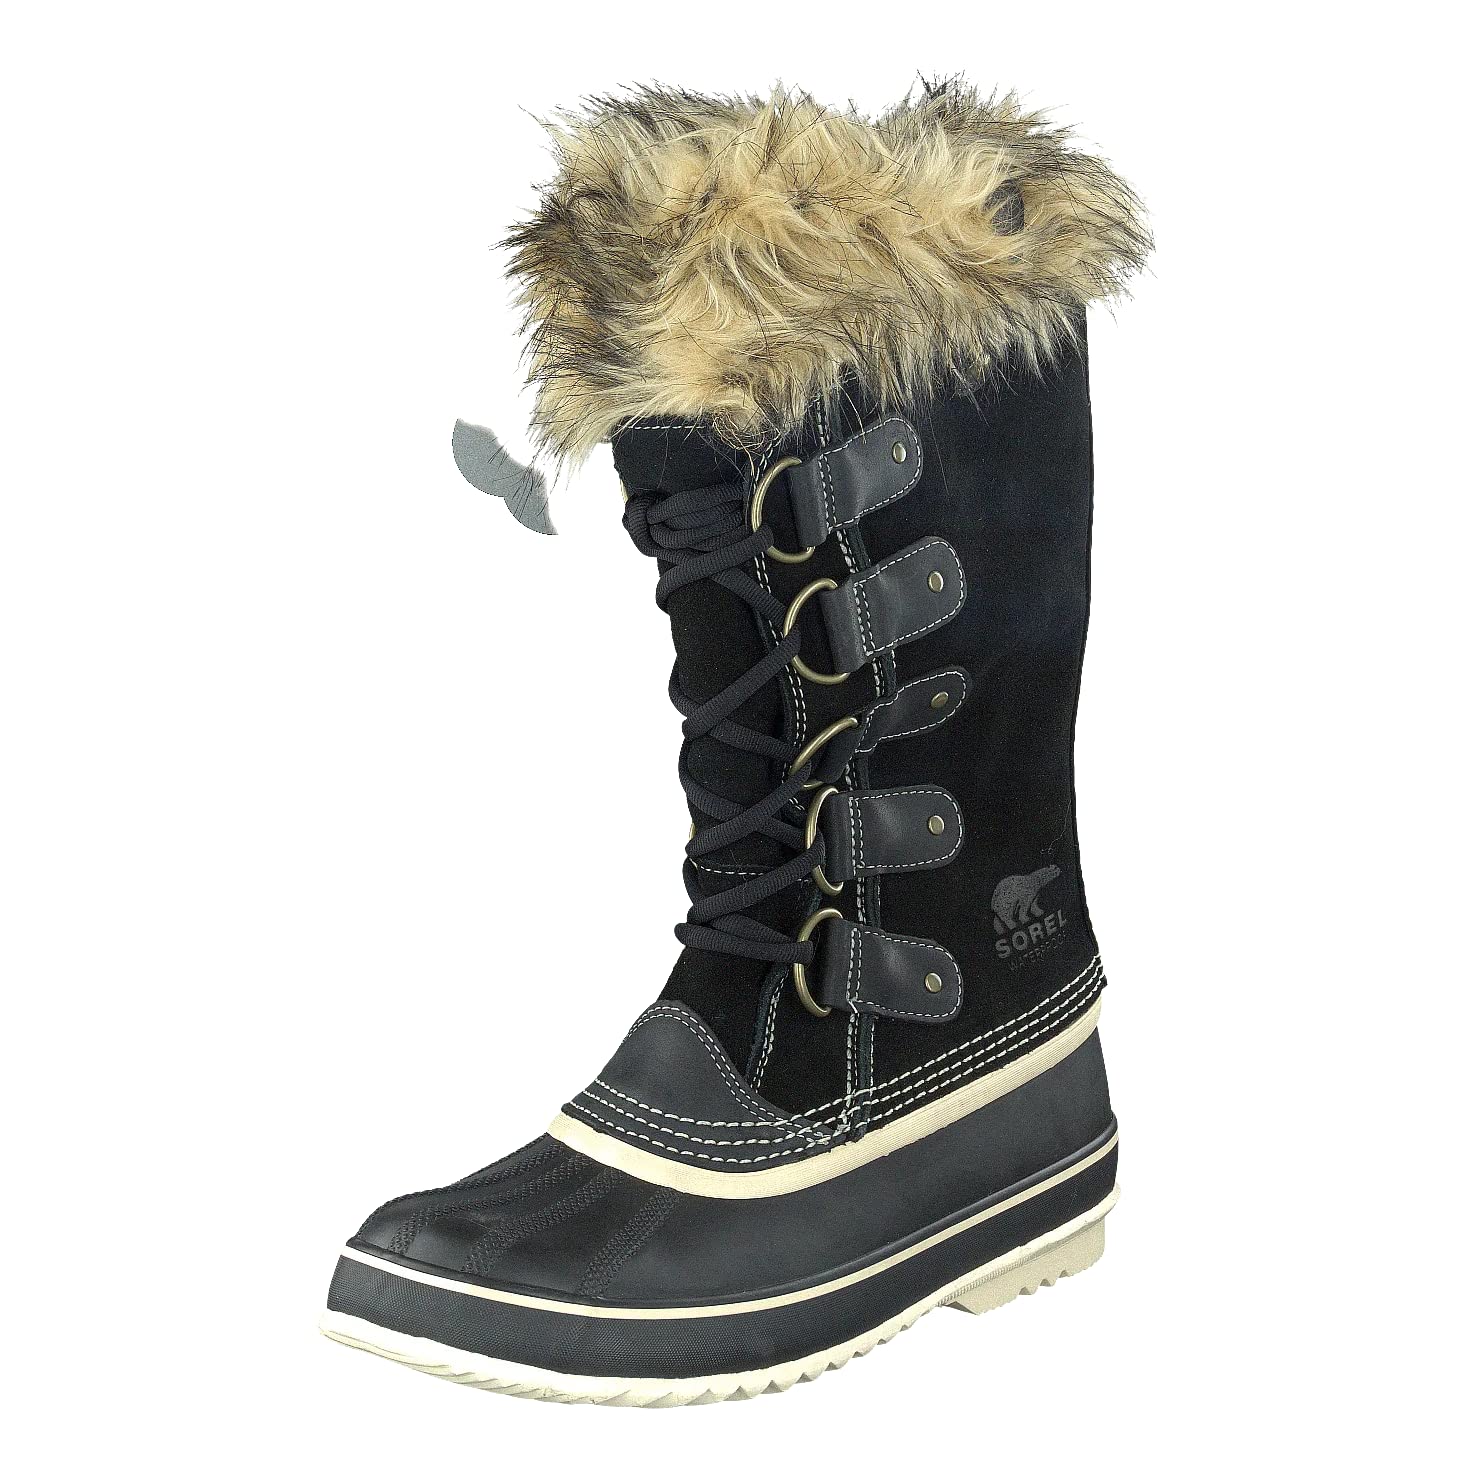 Sorel Women's Joan of Arctic Snow Boots